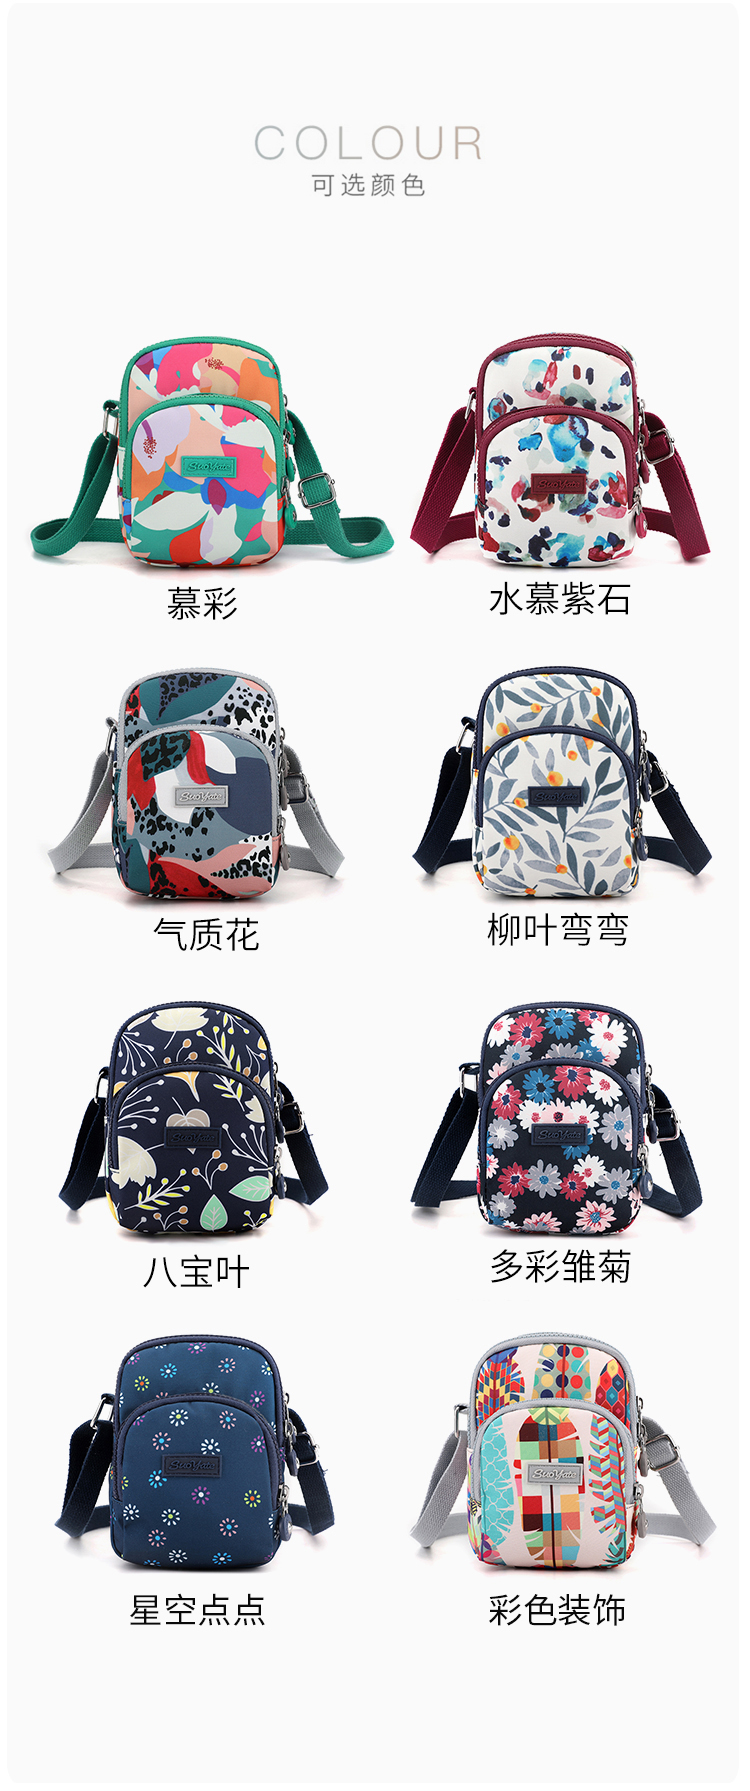 新款印花尼龙包时尚韩版女包便携小巧手机包实用休闲包通勤斜挎包详情15